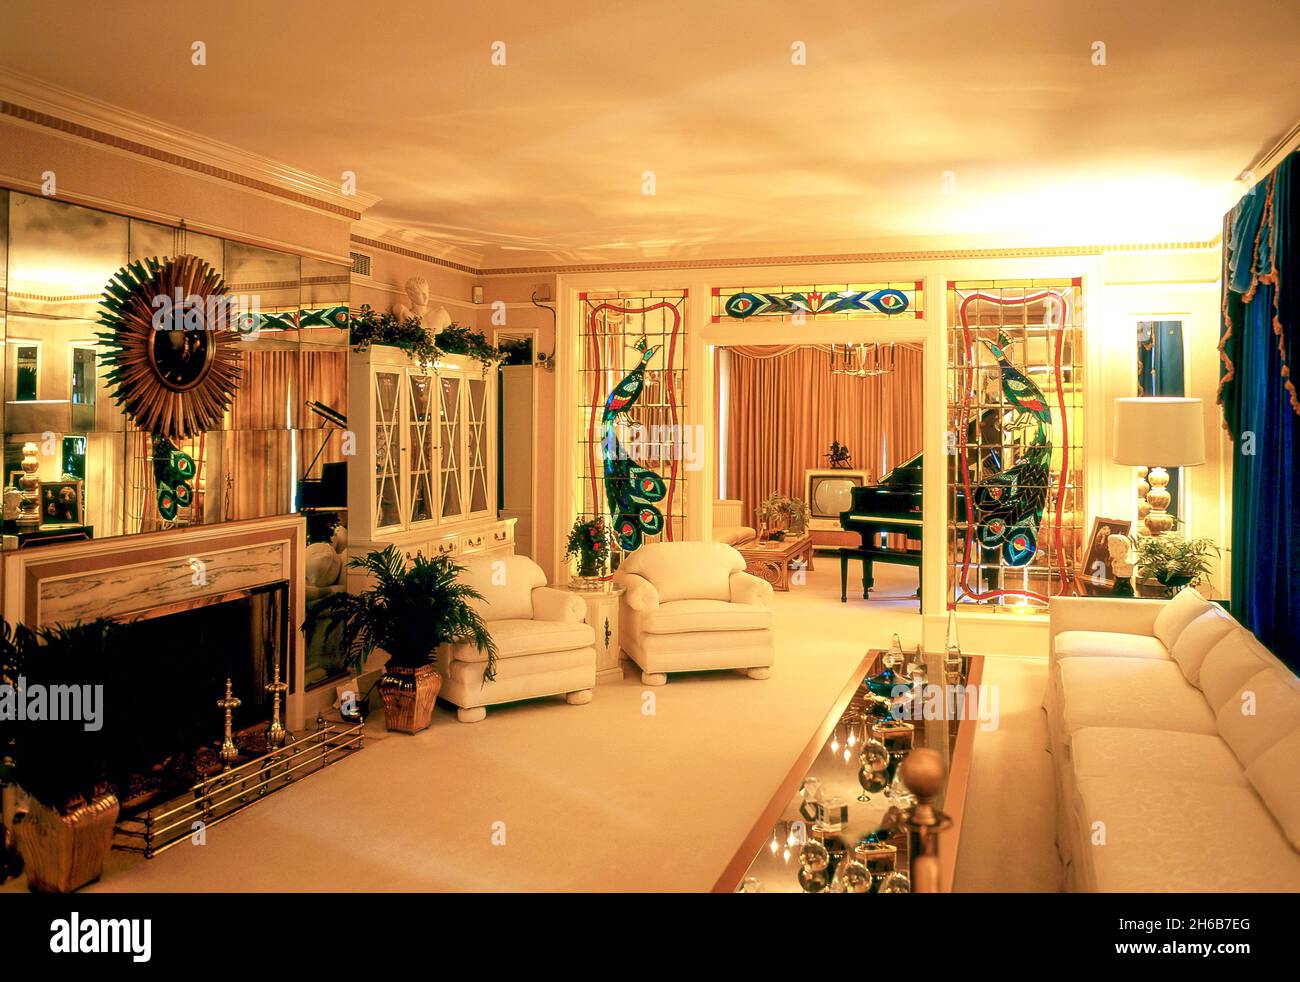 Das Wohnzimmer, Graceland Mansion, Elvis Presley Boulevard, Whitehaven, Memphis, Tennessee, Vereinigte Staaten von Amerika Stockfoto